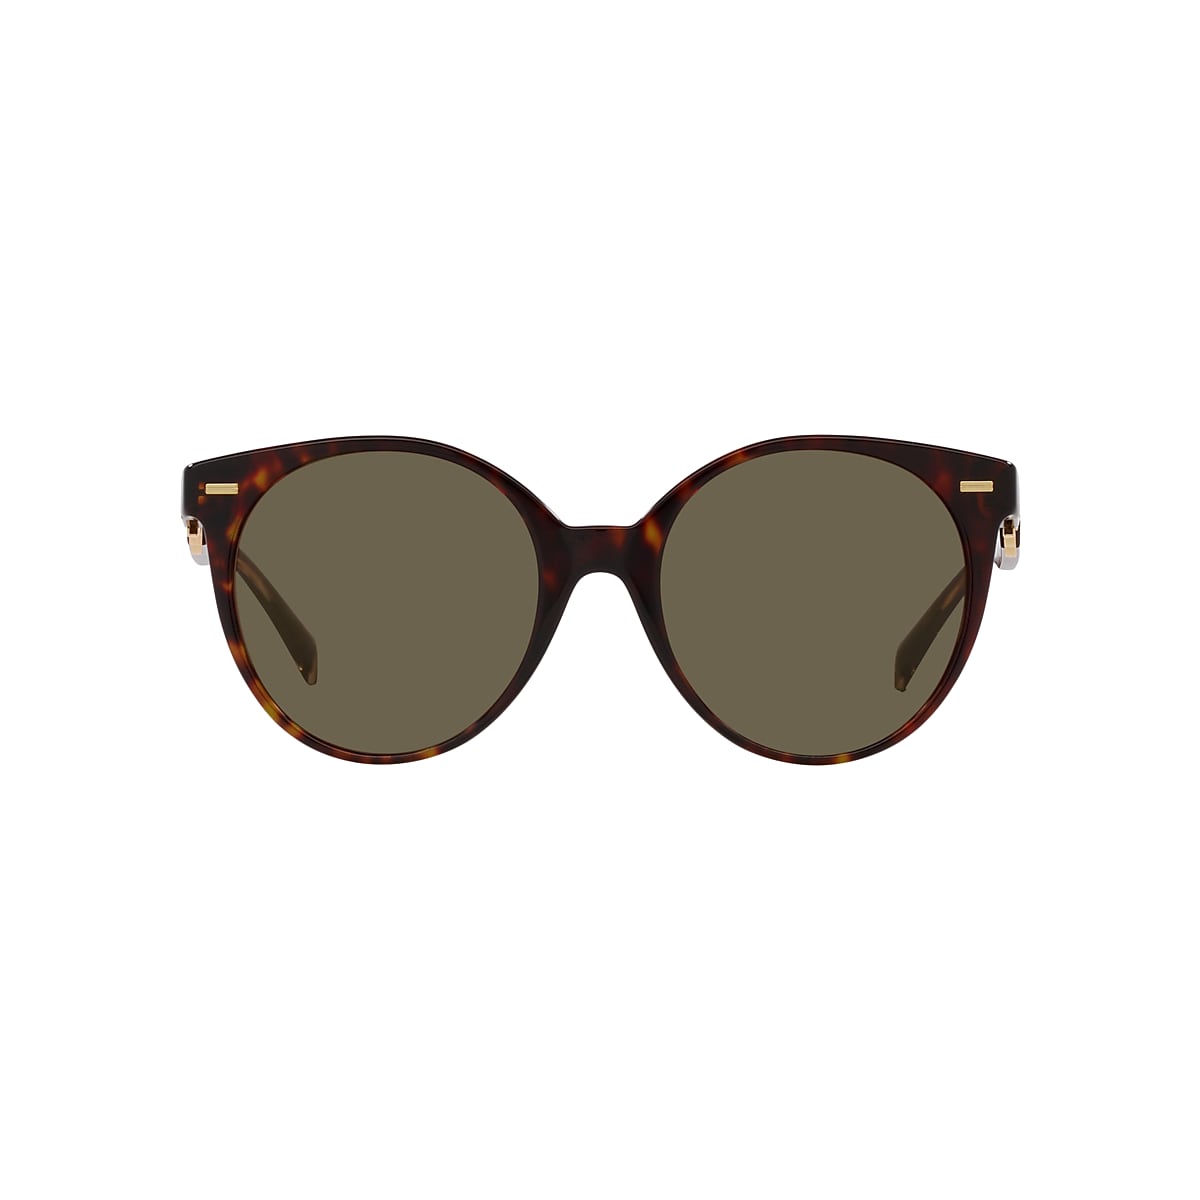 VERSACE VE4442 Havana - Women Luxury Sunglasses, Brown Lens